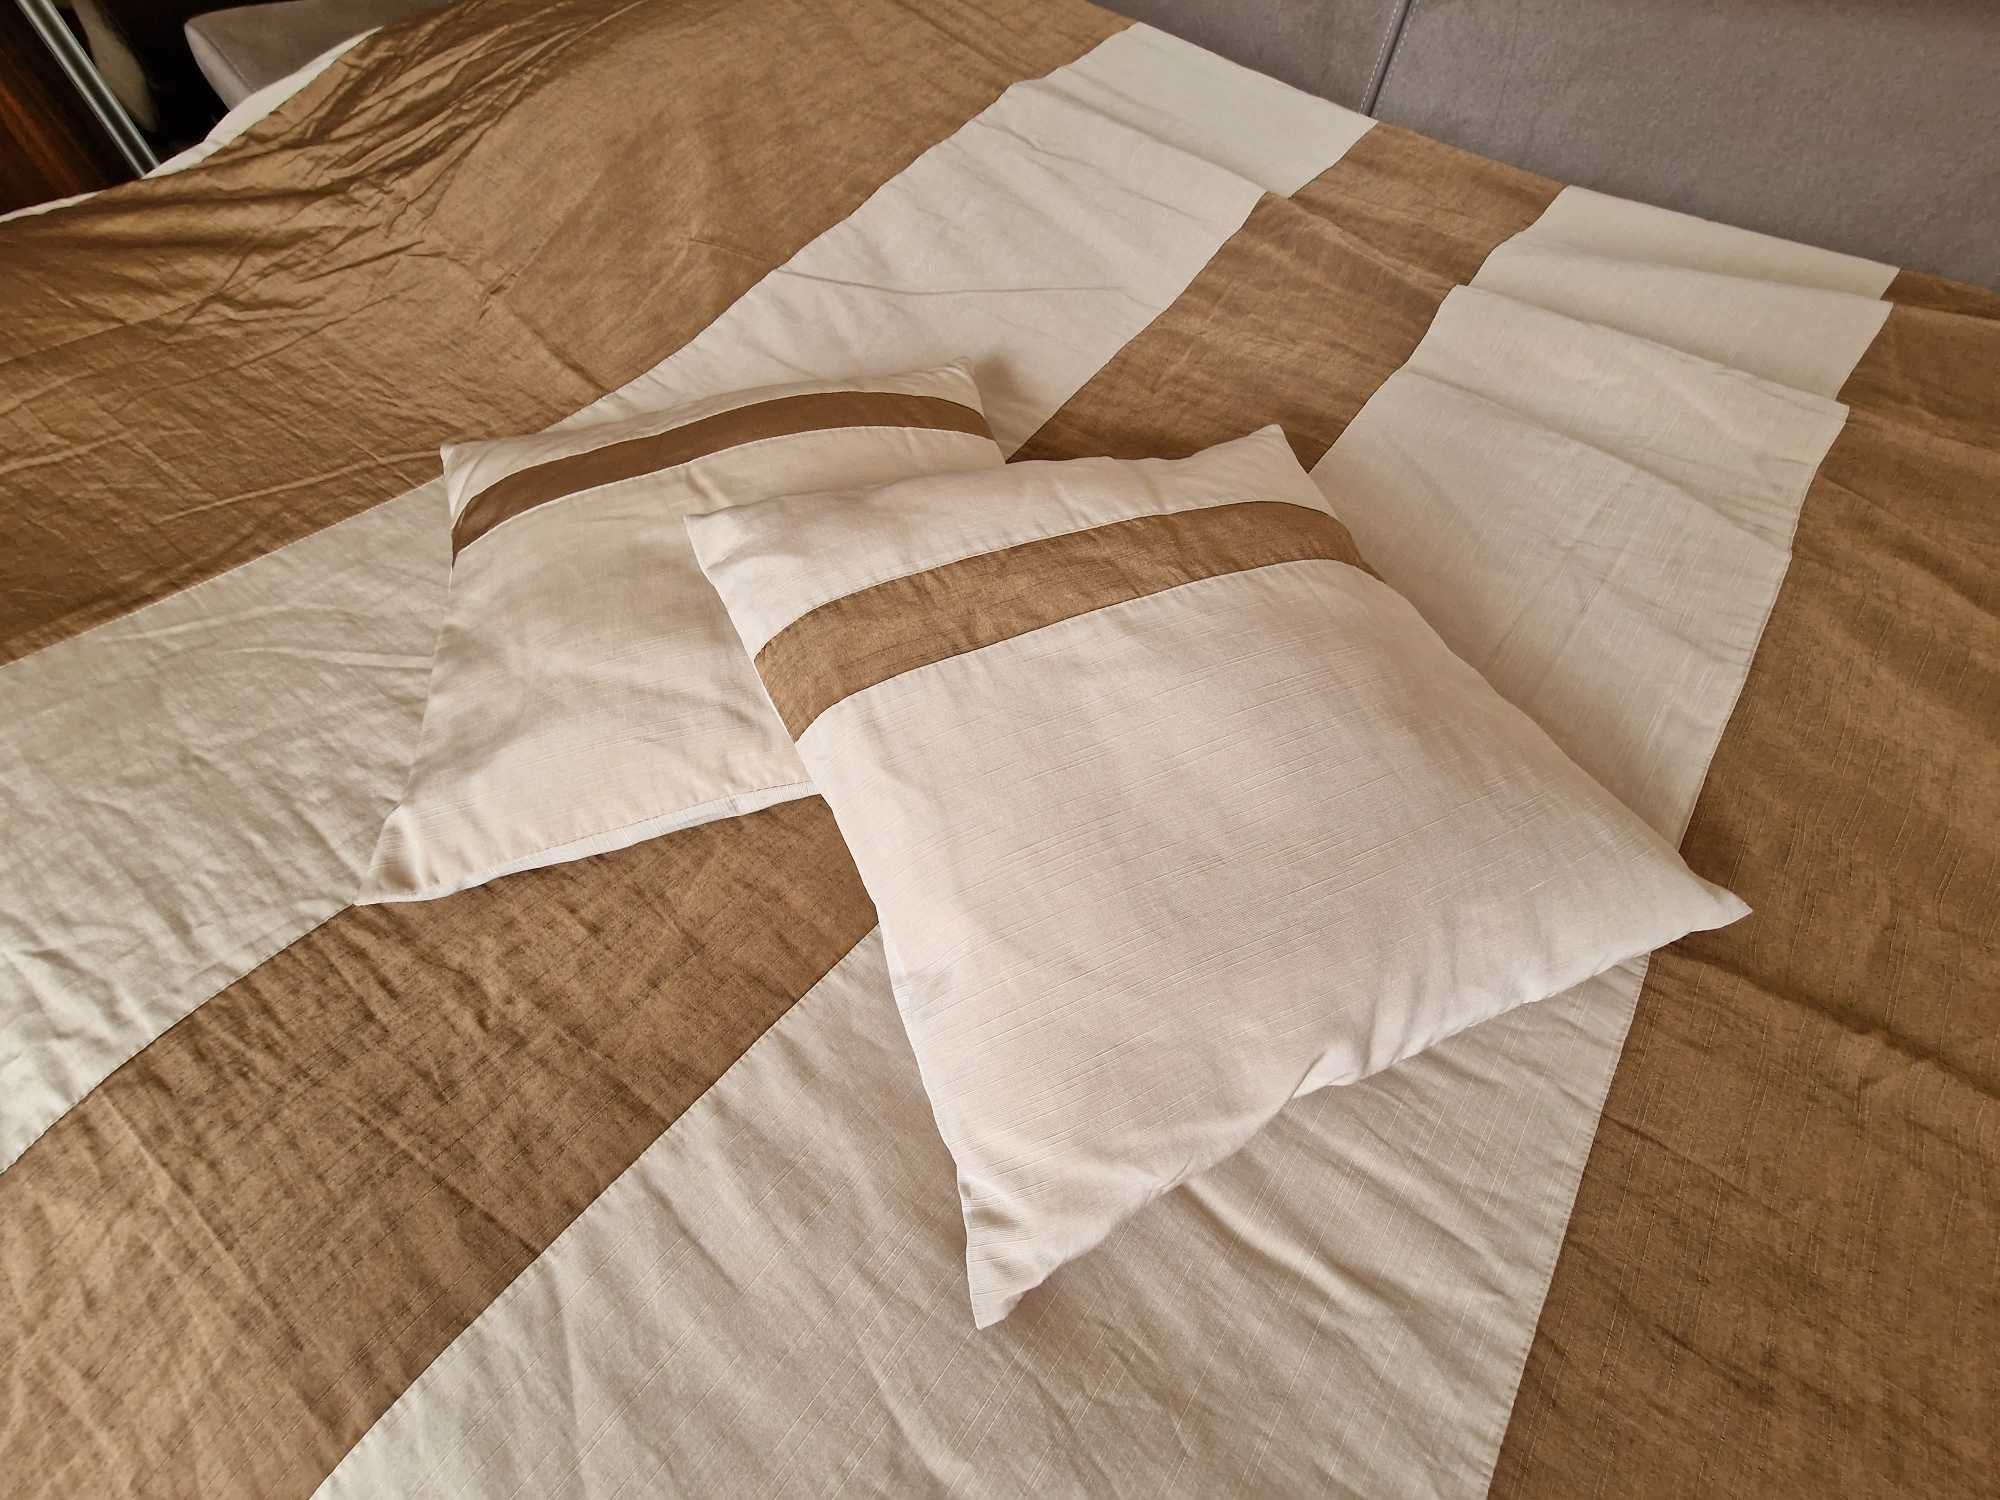 Kapa narzuta na łóżko 240cm x 220 cm + 2 poduszki